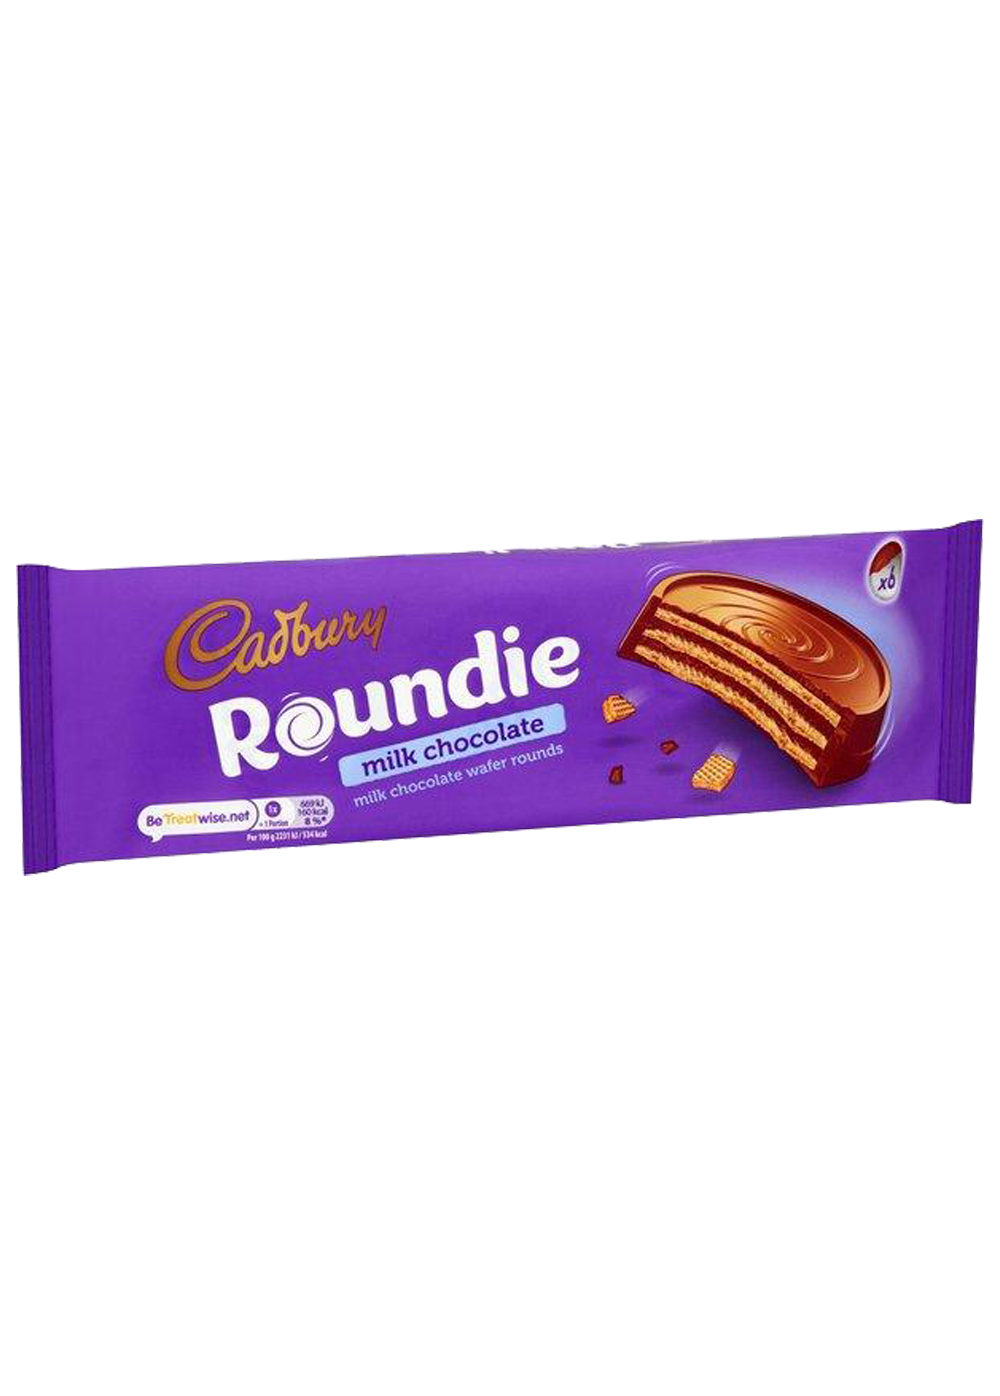 Cadbury Roundie Milk Chocolate 6 Wafer Rounds 180g